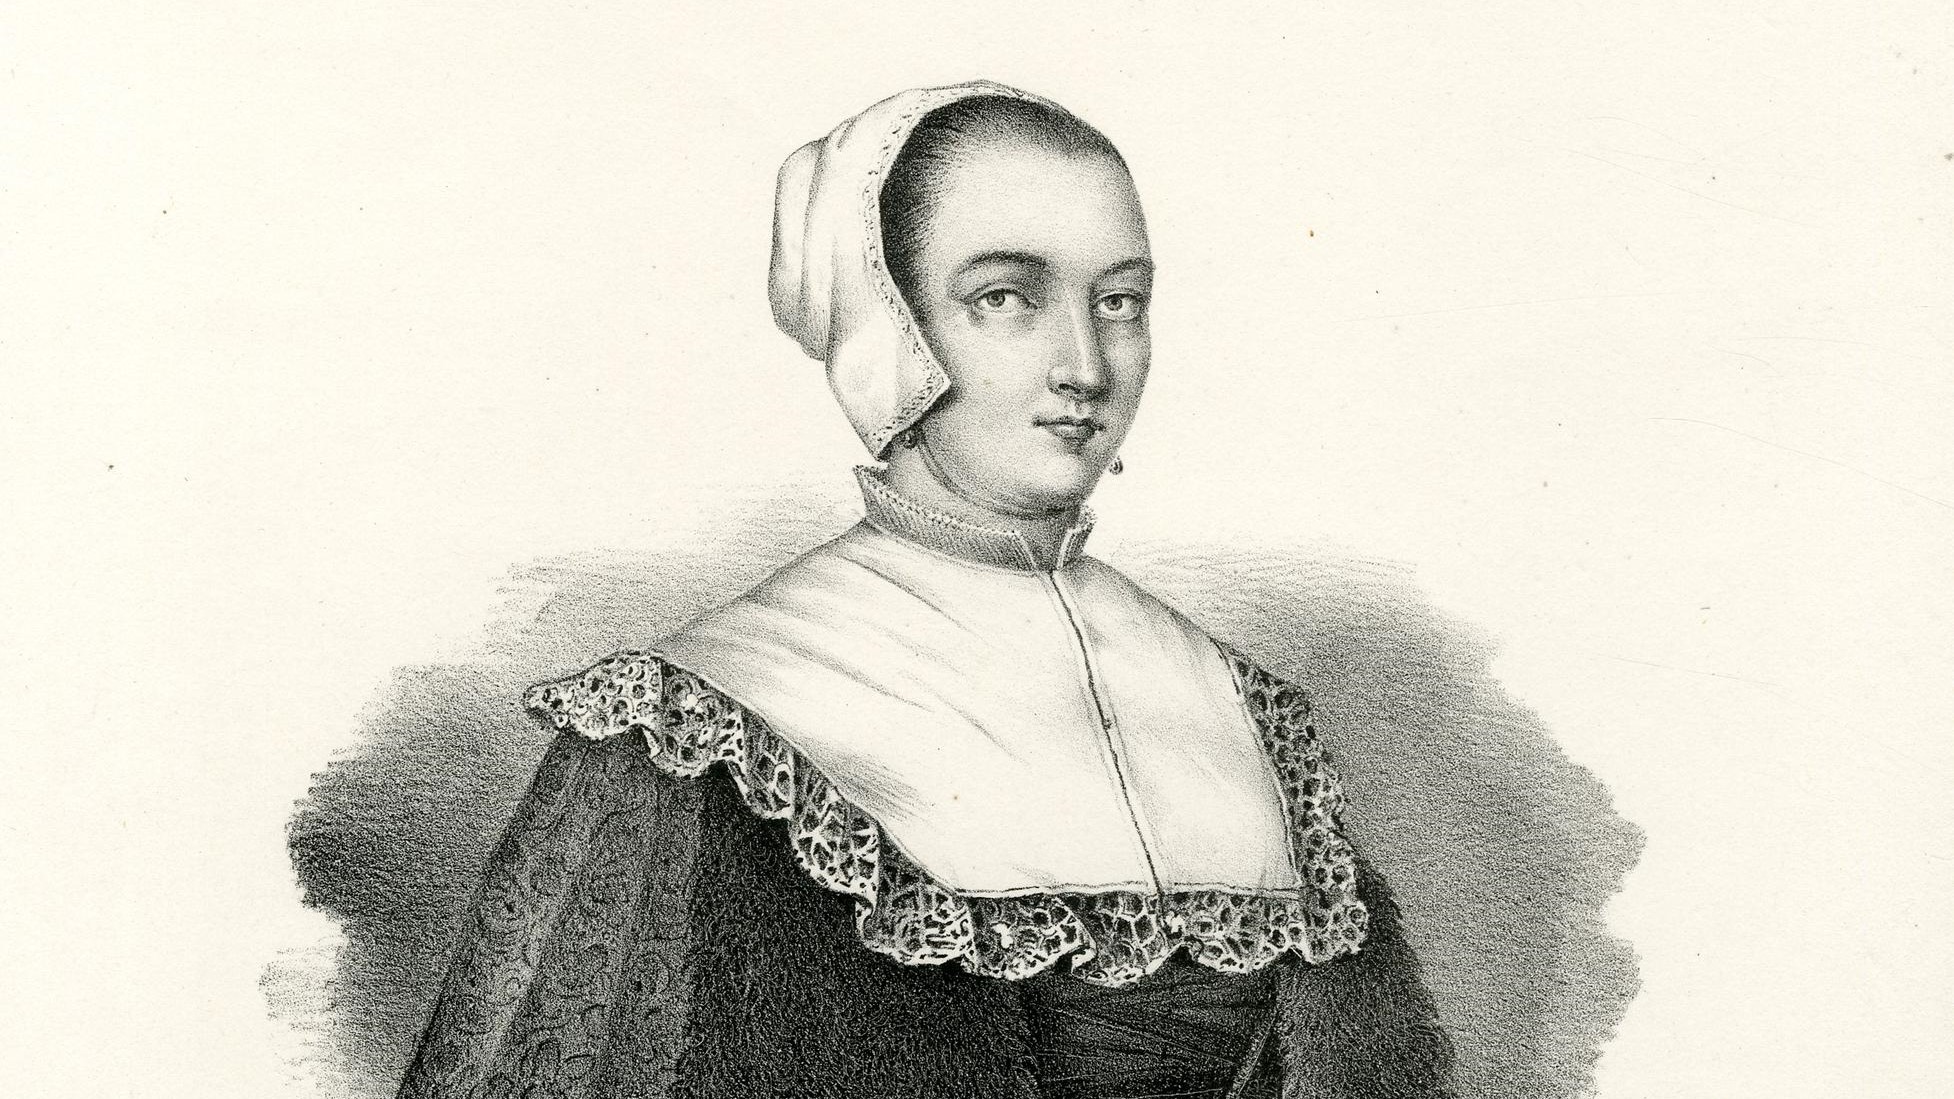 Justine Siegemund was a 17th century German midwife.